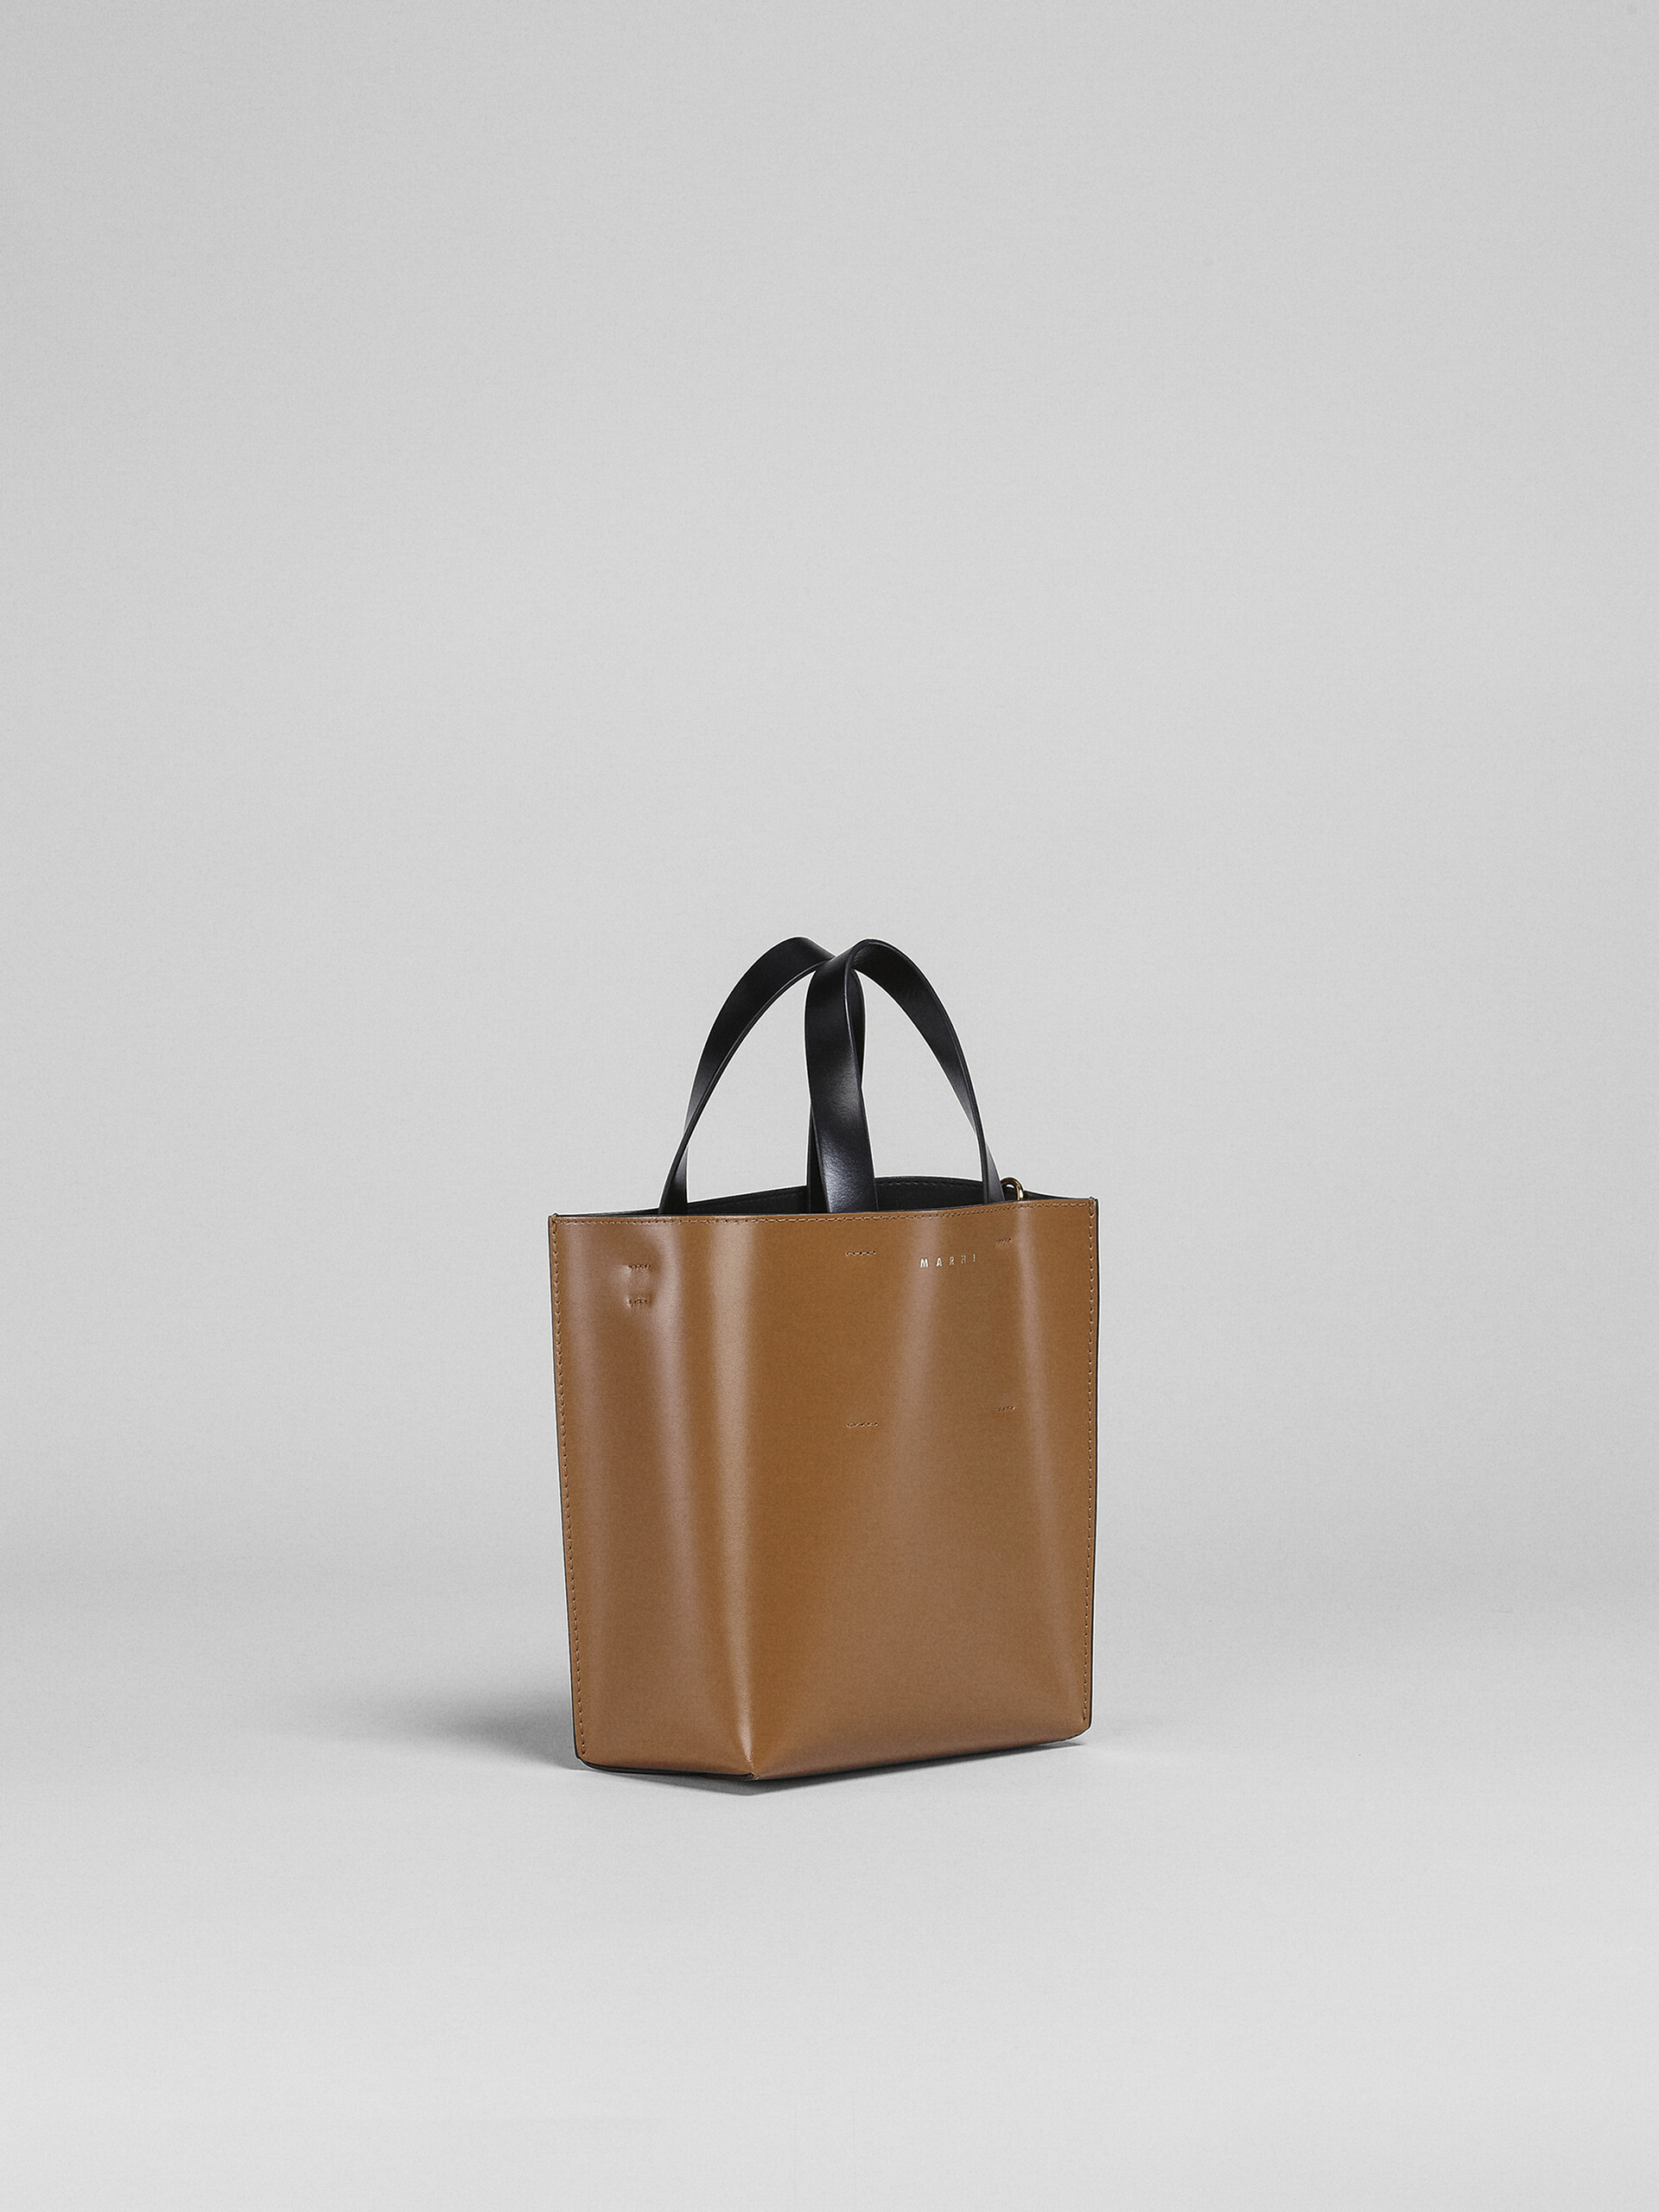 Museo Bag Mini in pelle nera e marrone - Borse shopping - Image 6